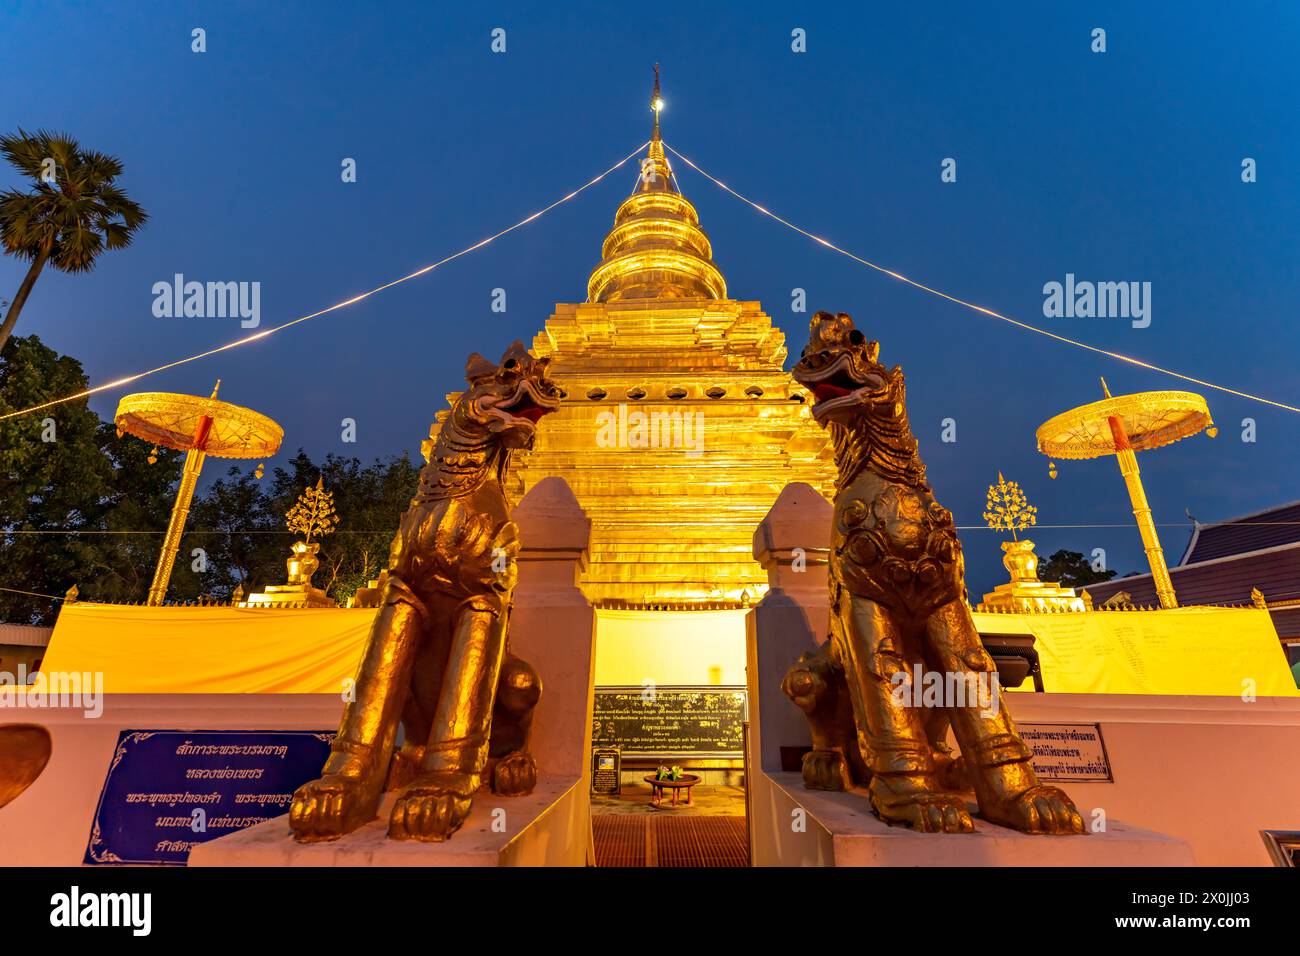 Le chedi doré du temple bouddhiste Wat Phra That si in Chom Thong au crépuscule, Thaïlande, Asie Banque D'Images